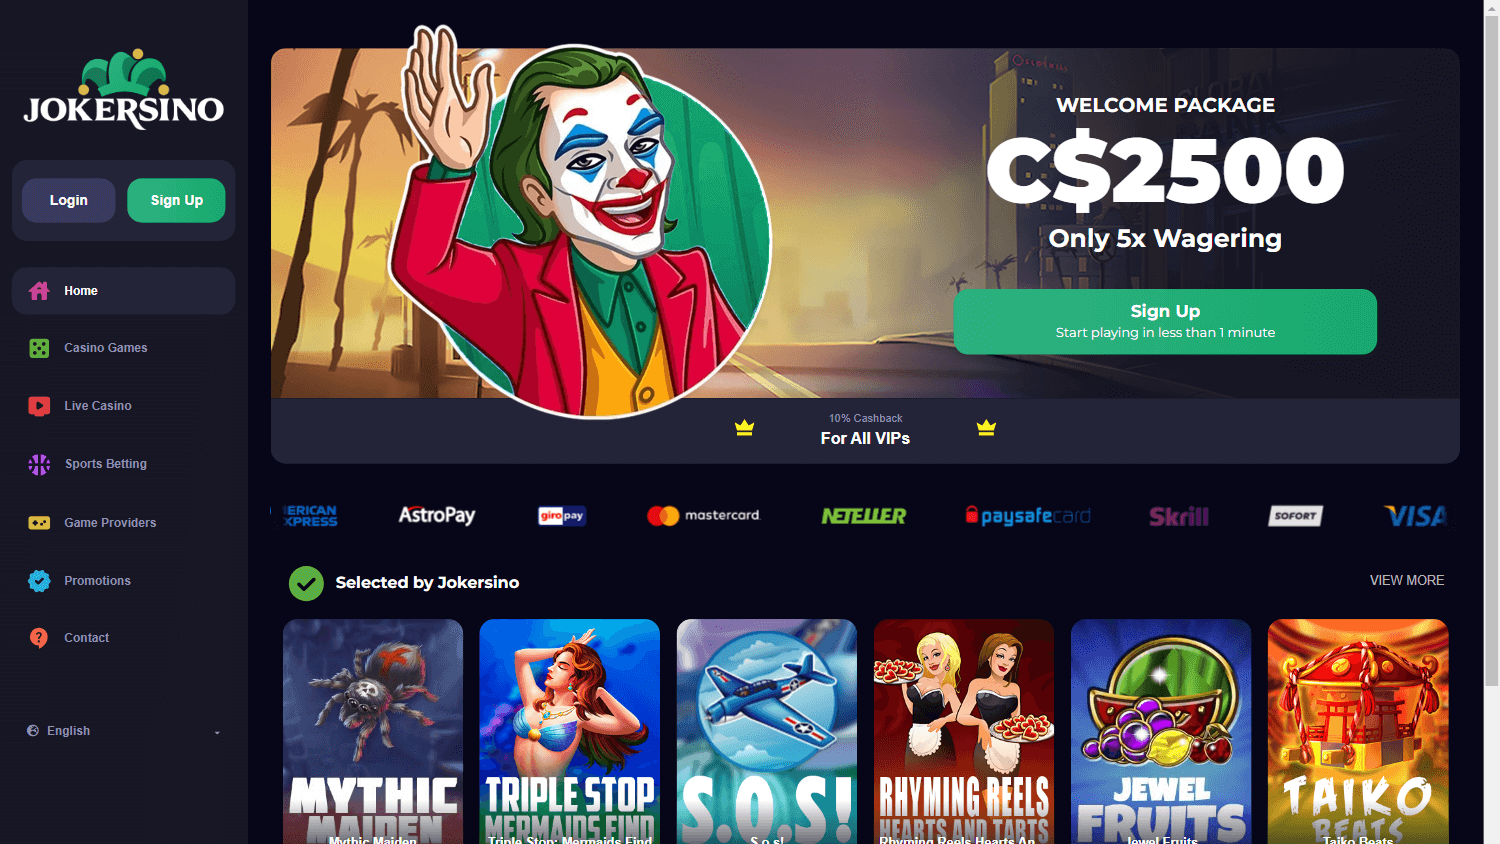 jokersino_casino_homepage_desktop